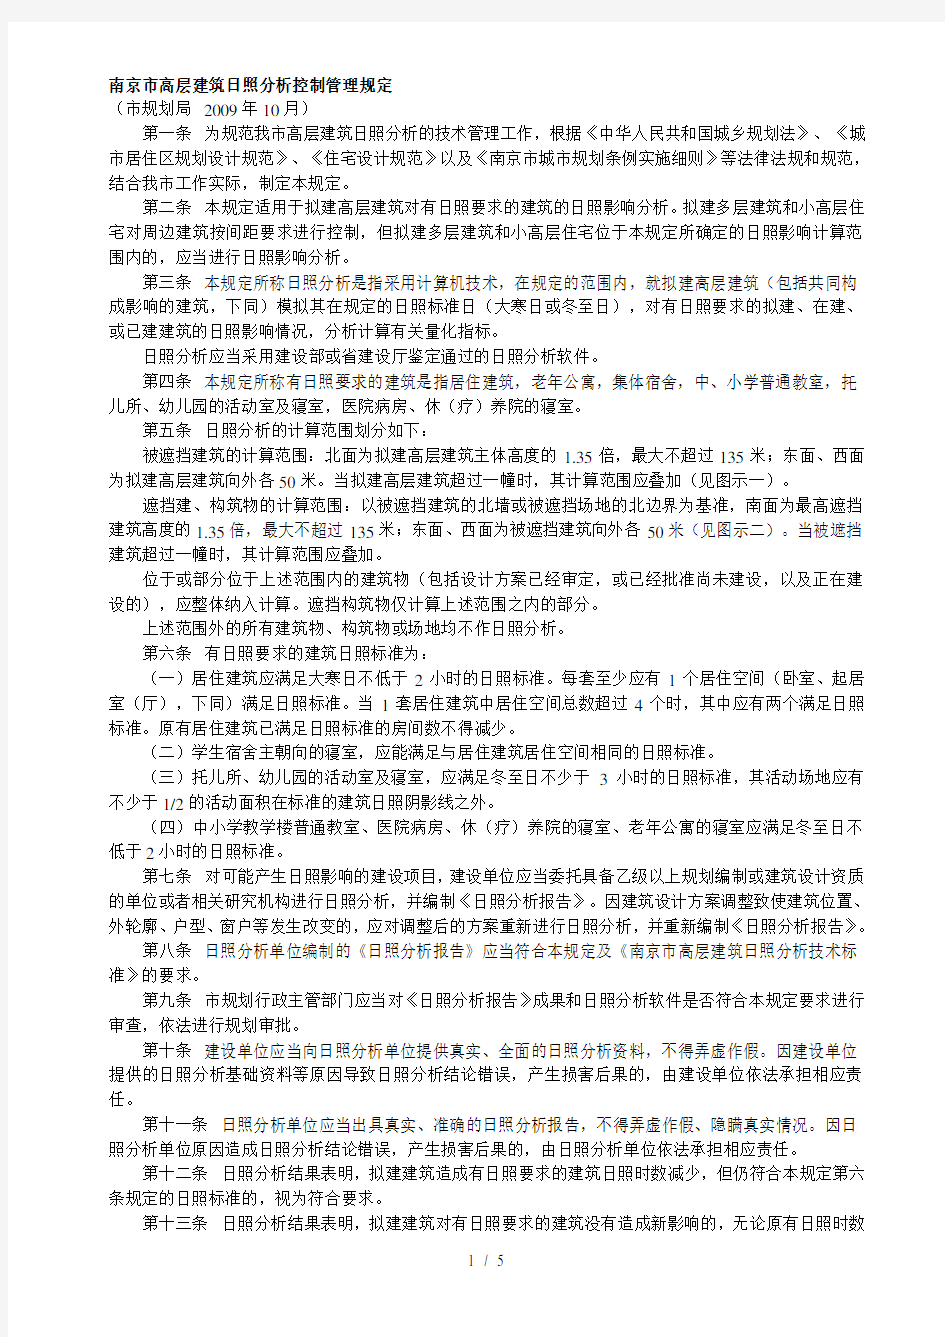 南京市高层建筑日照分析控制管理规定